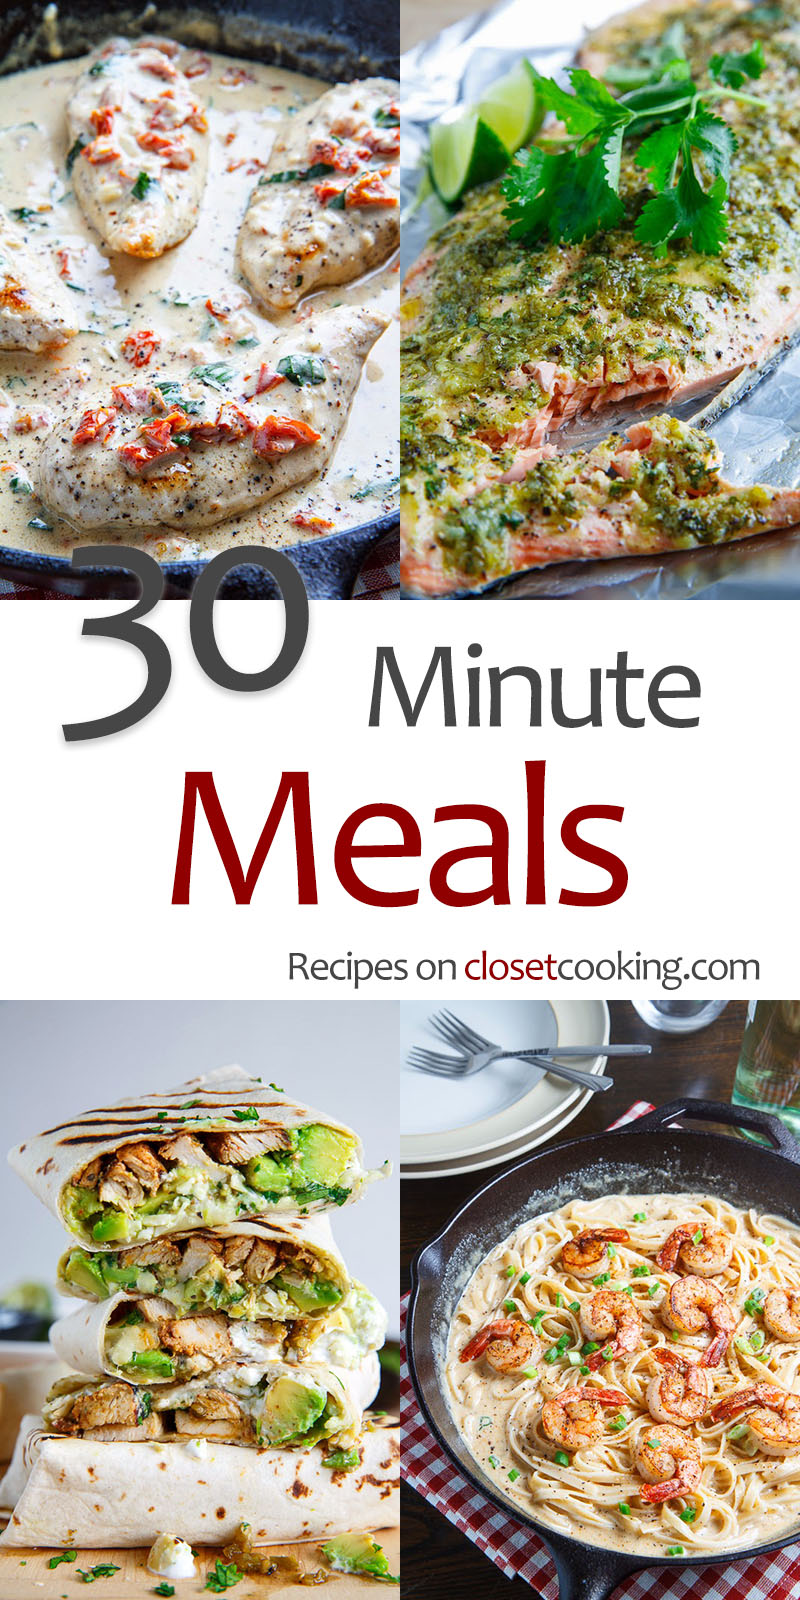 II. Benefits of Quick Meals Under 30 Minutes